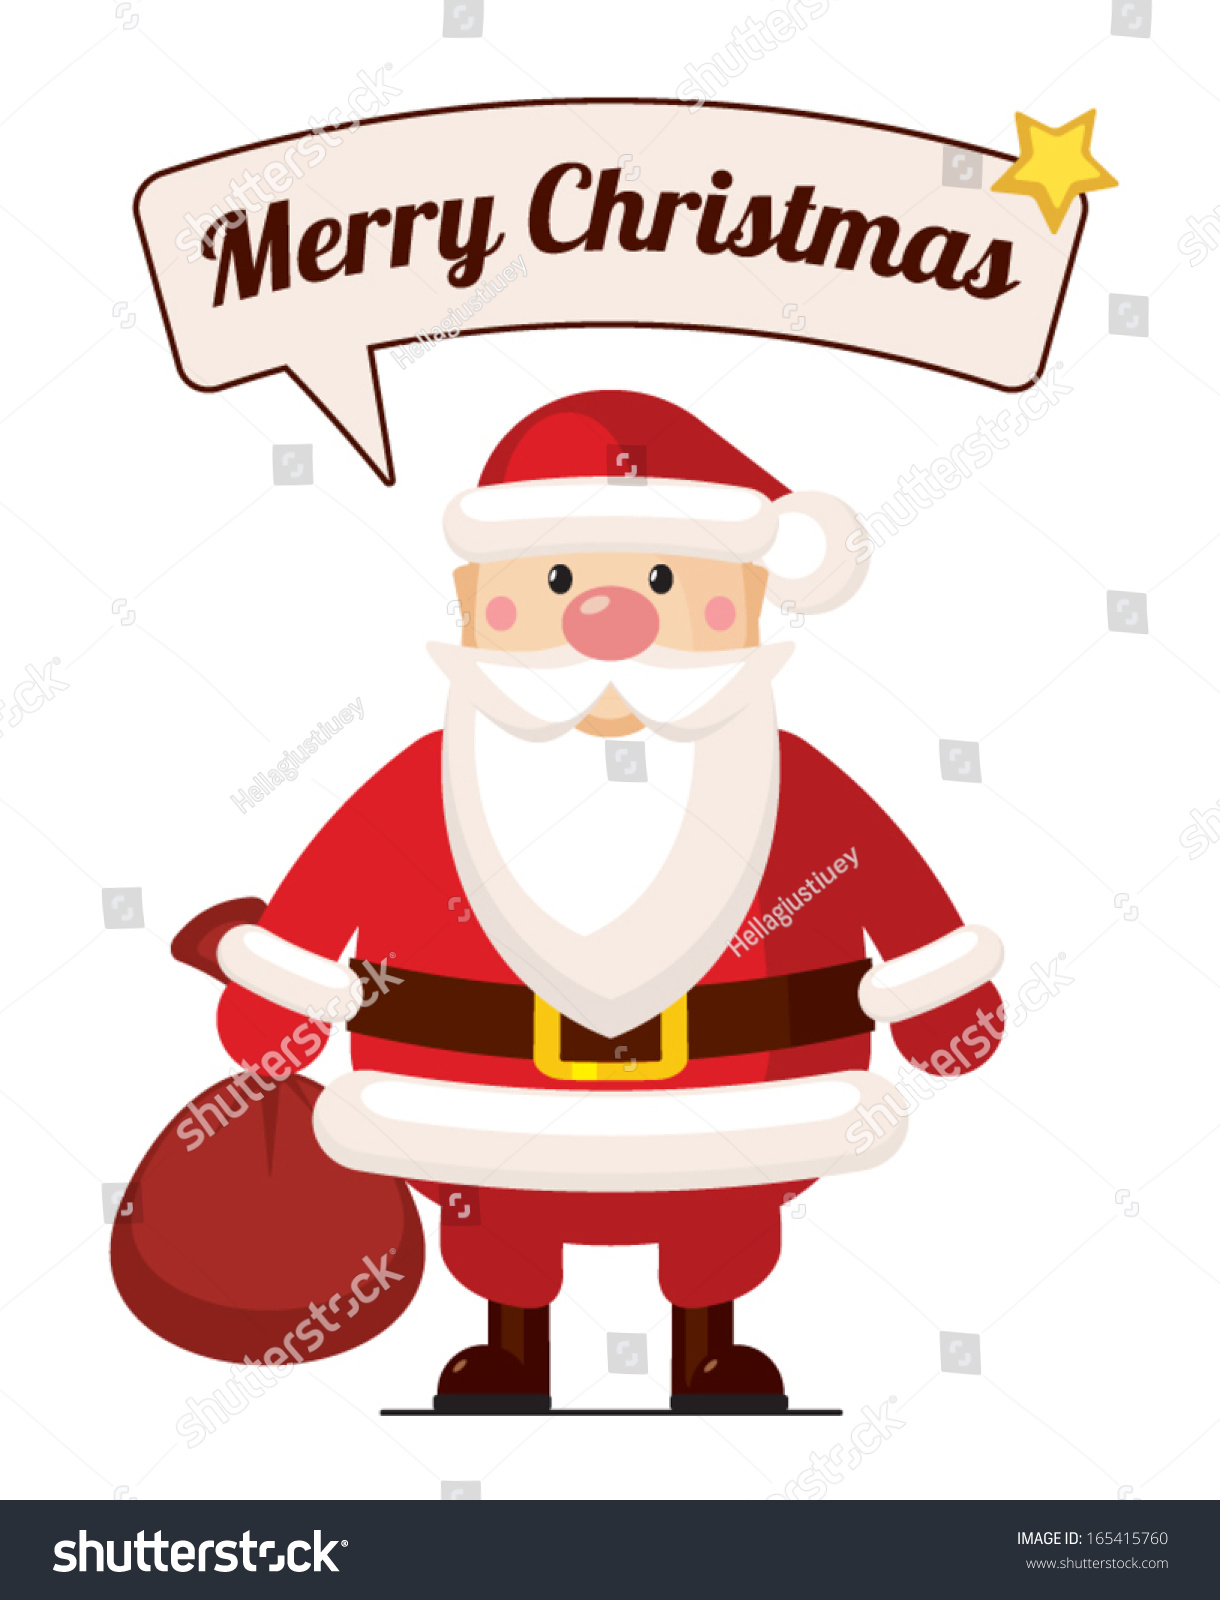 Santa Claus Stock Vector Illustration 165415760 : Shutterstock